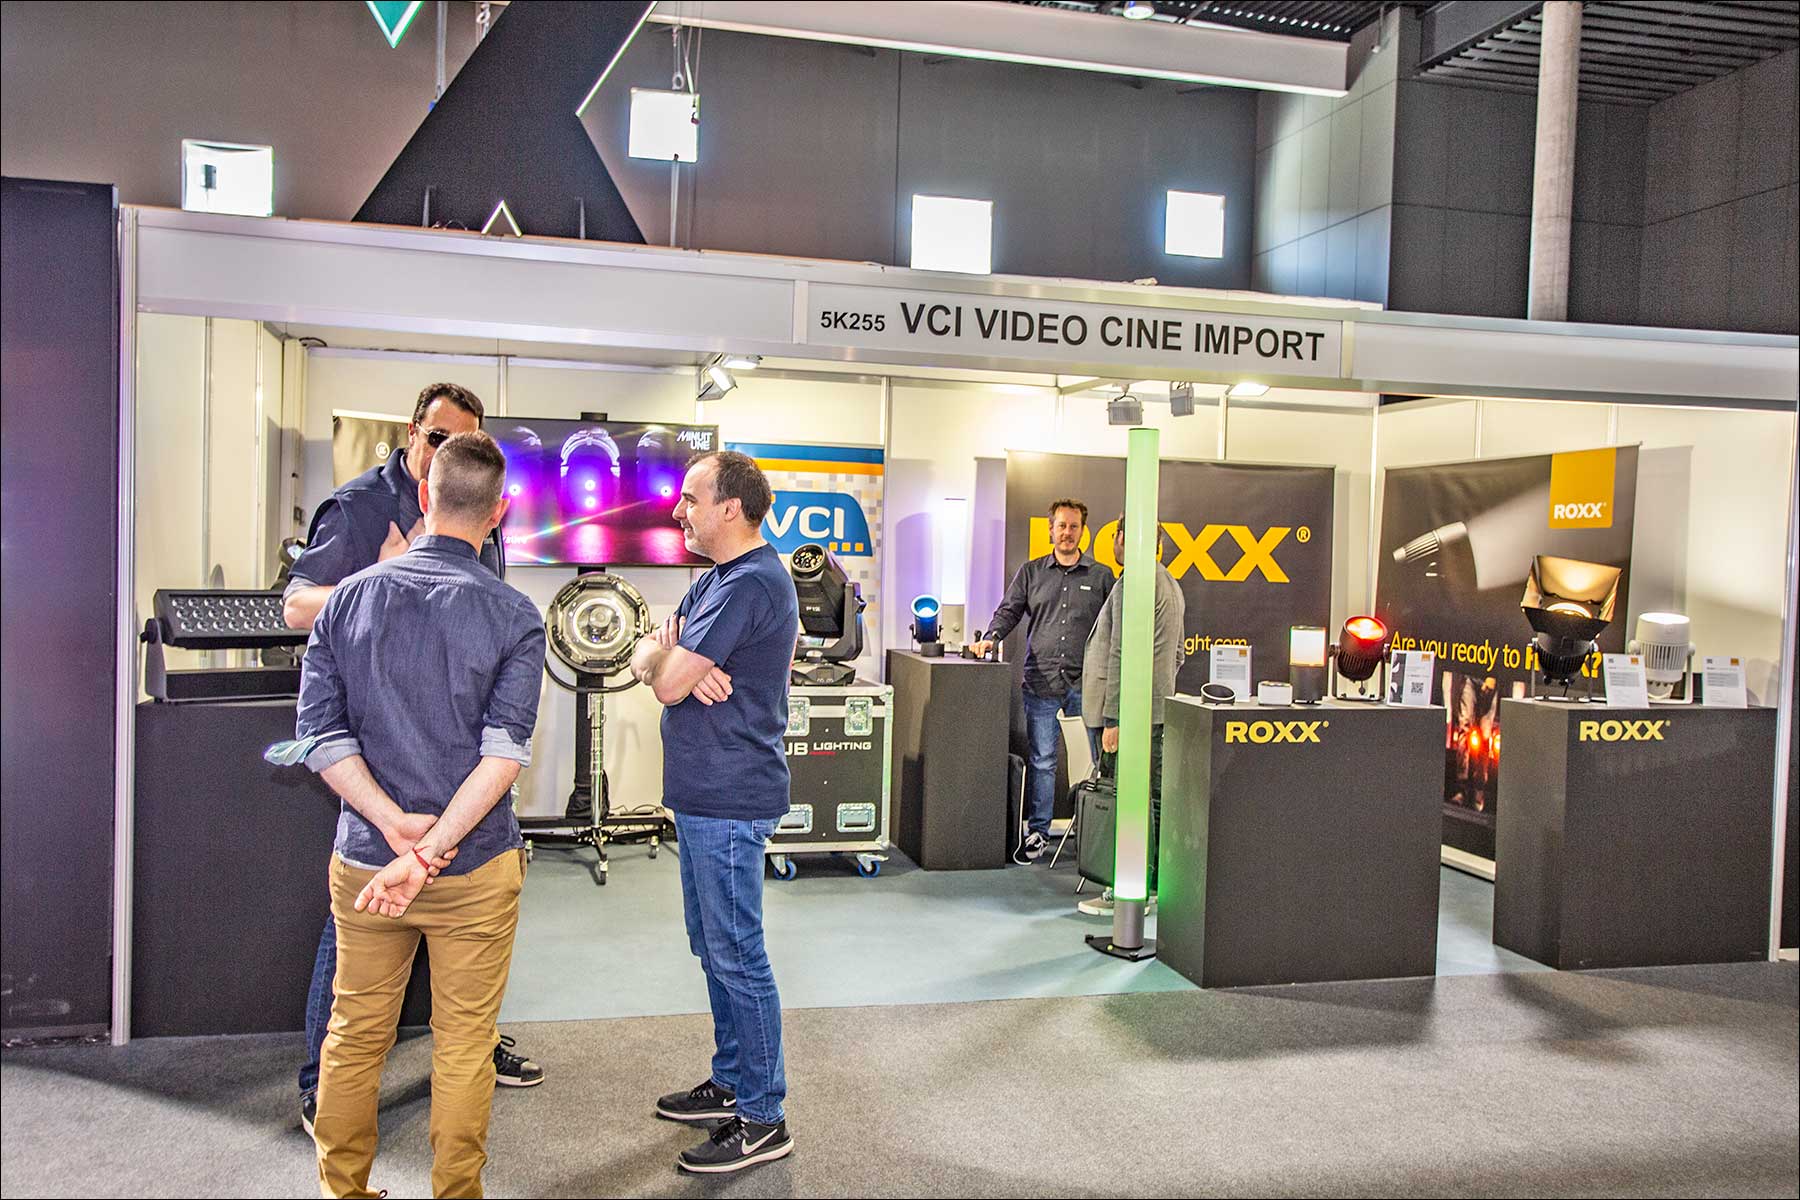 Licht: ROXX und VCI VIDEO CINE IMPORT